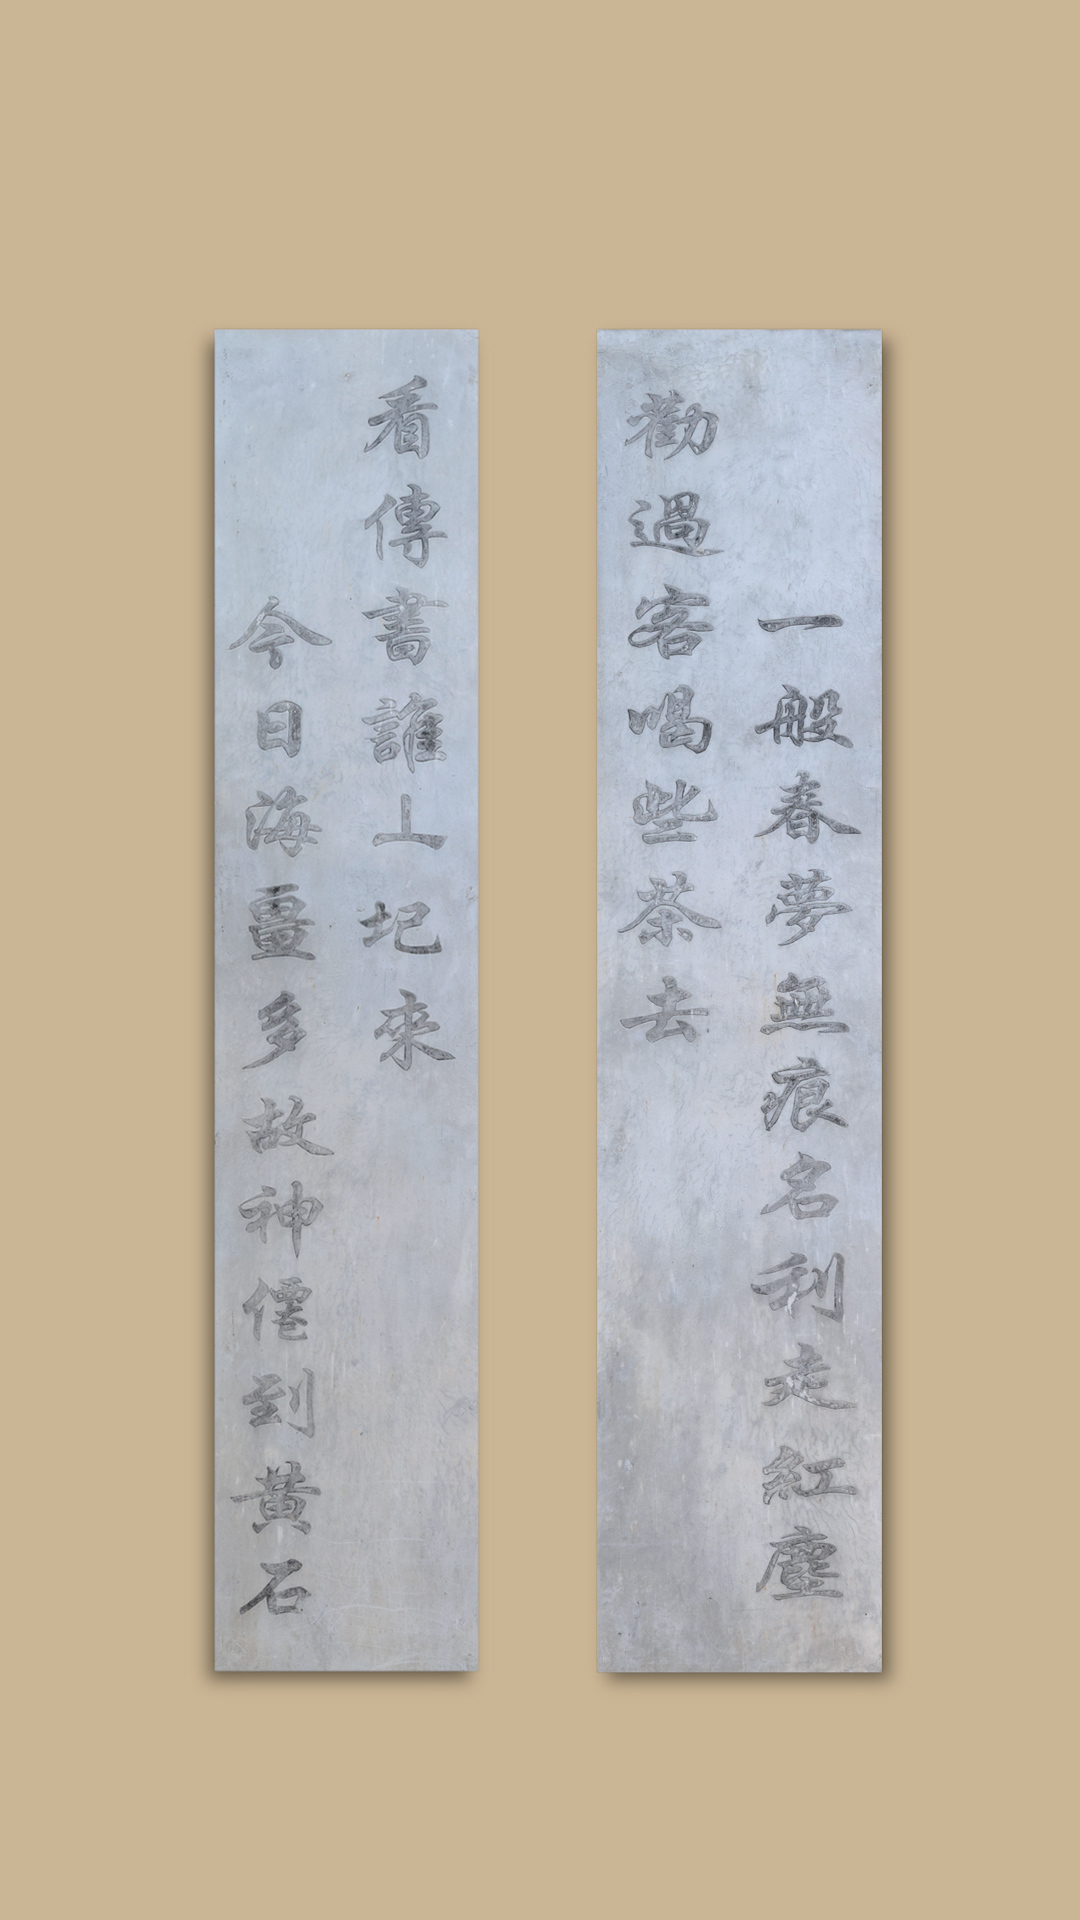 楹联里的湖南㉕丨两副茶亭联，展示中国文人“登山临水”与“济世安民”的情结